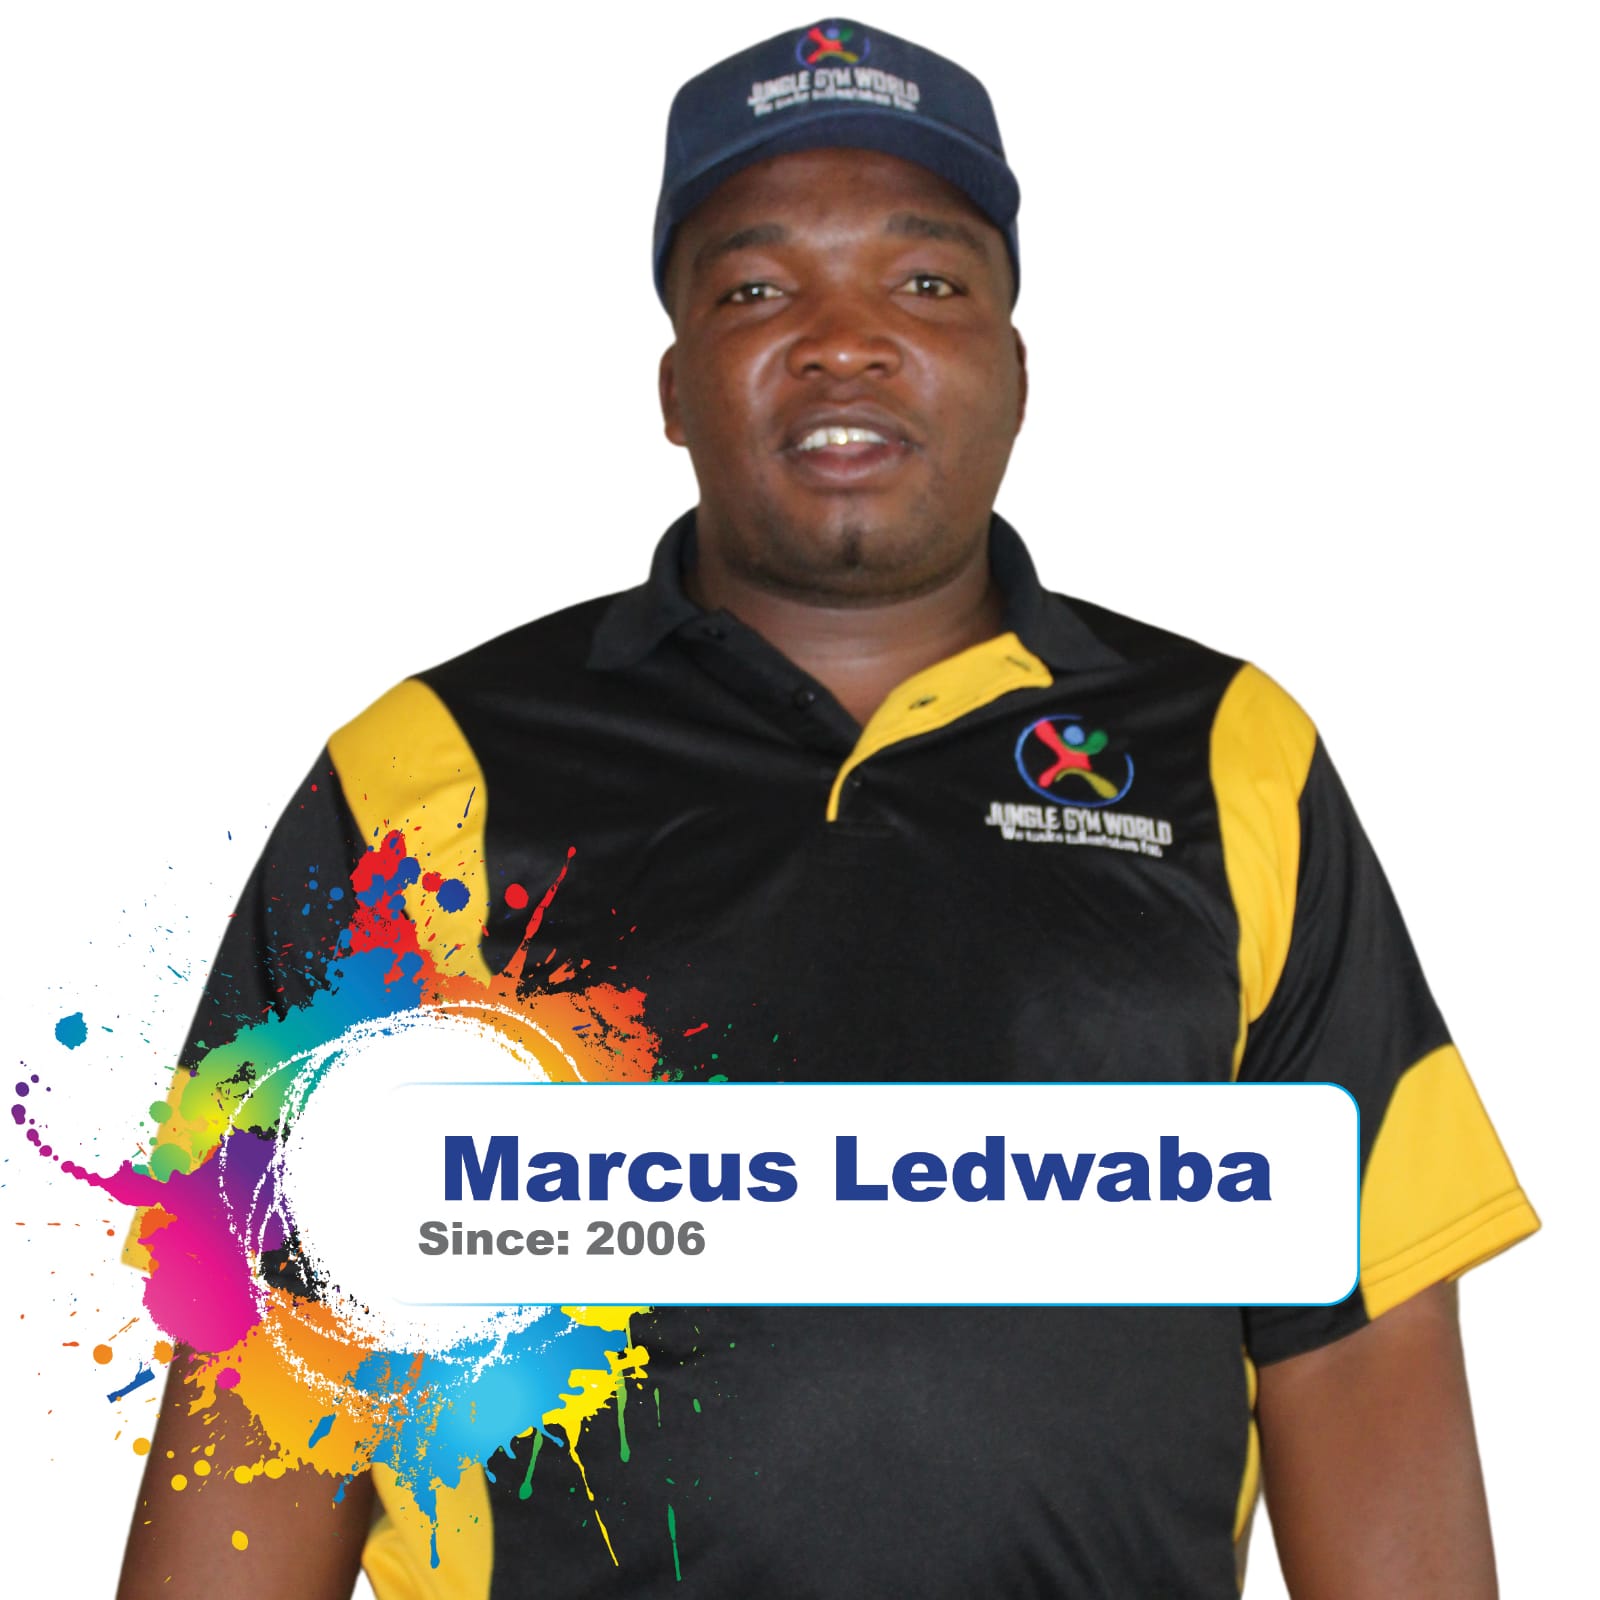 Marcus Ledwaba